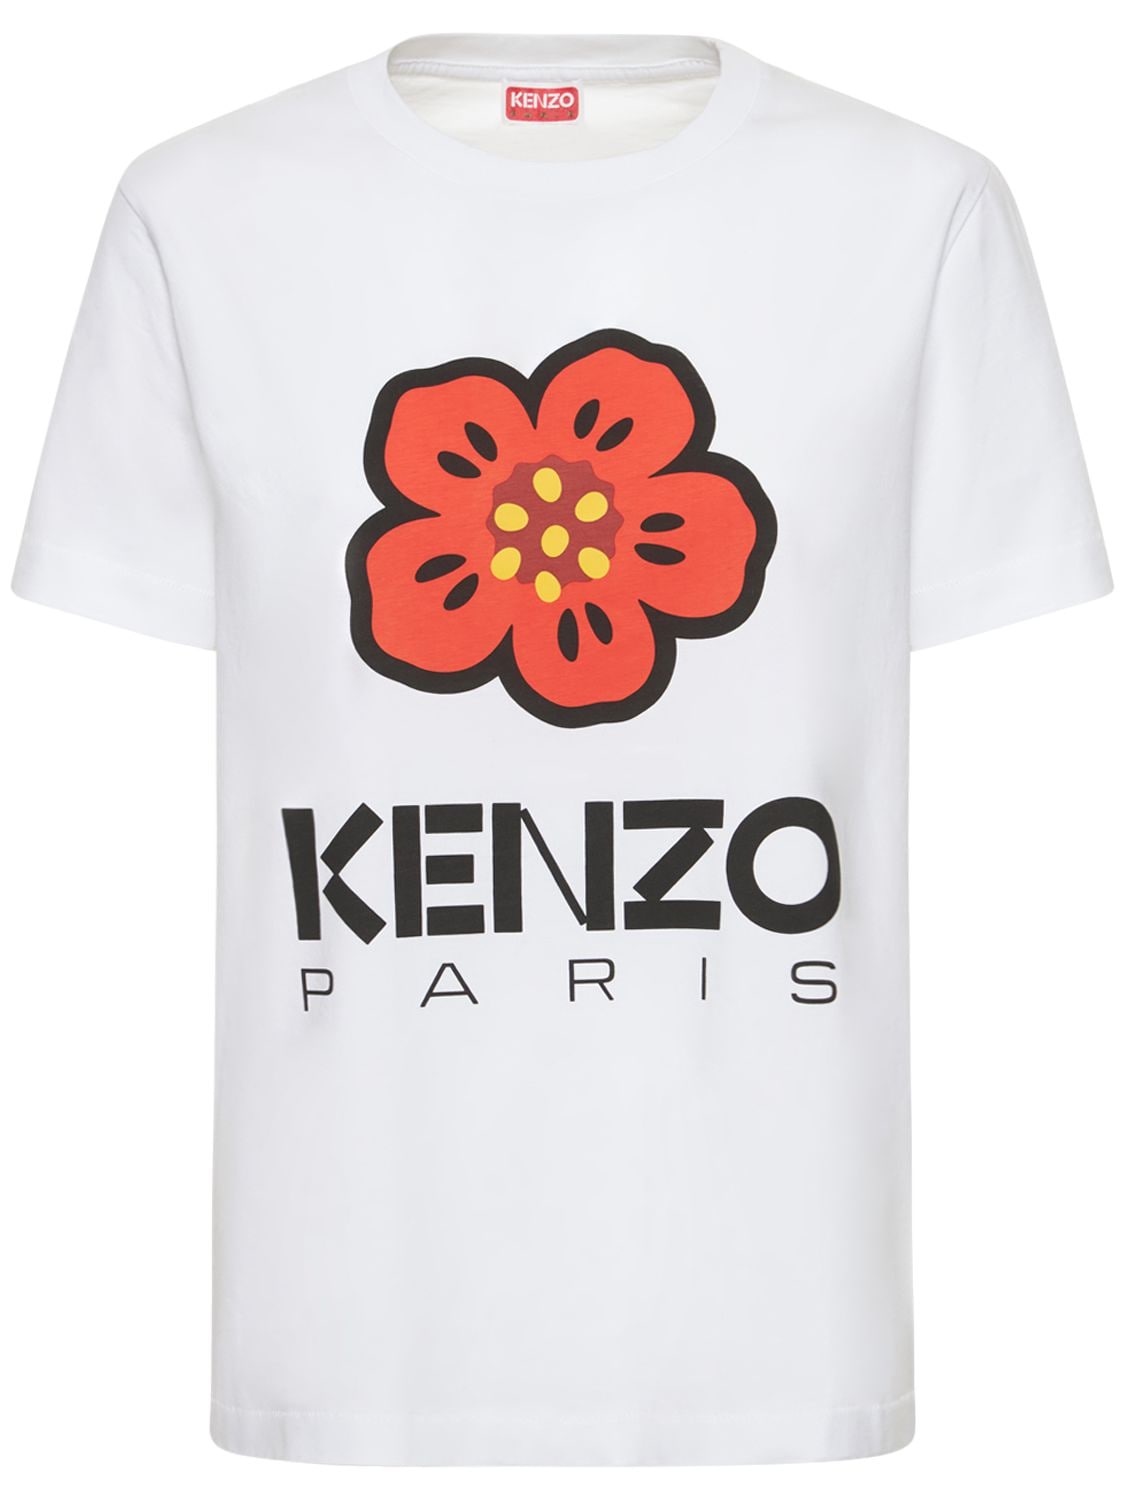 T-shirt Loose Fit In Jersey Di Cotone Con Logo - KENZO PARIS - Modalova